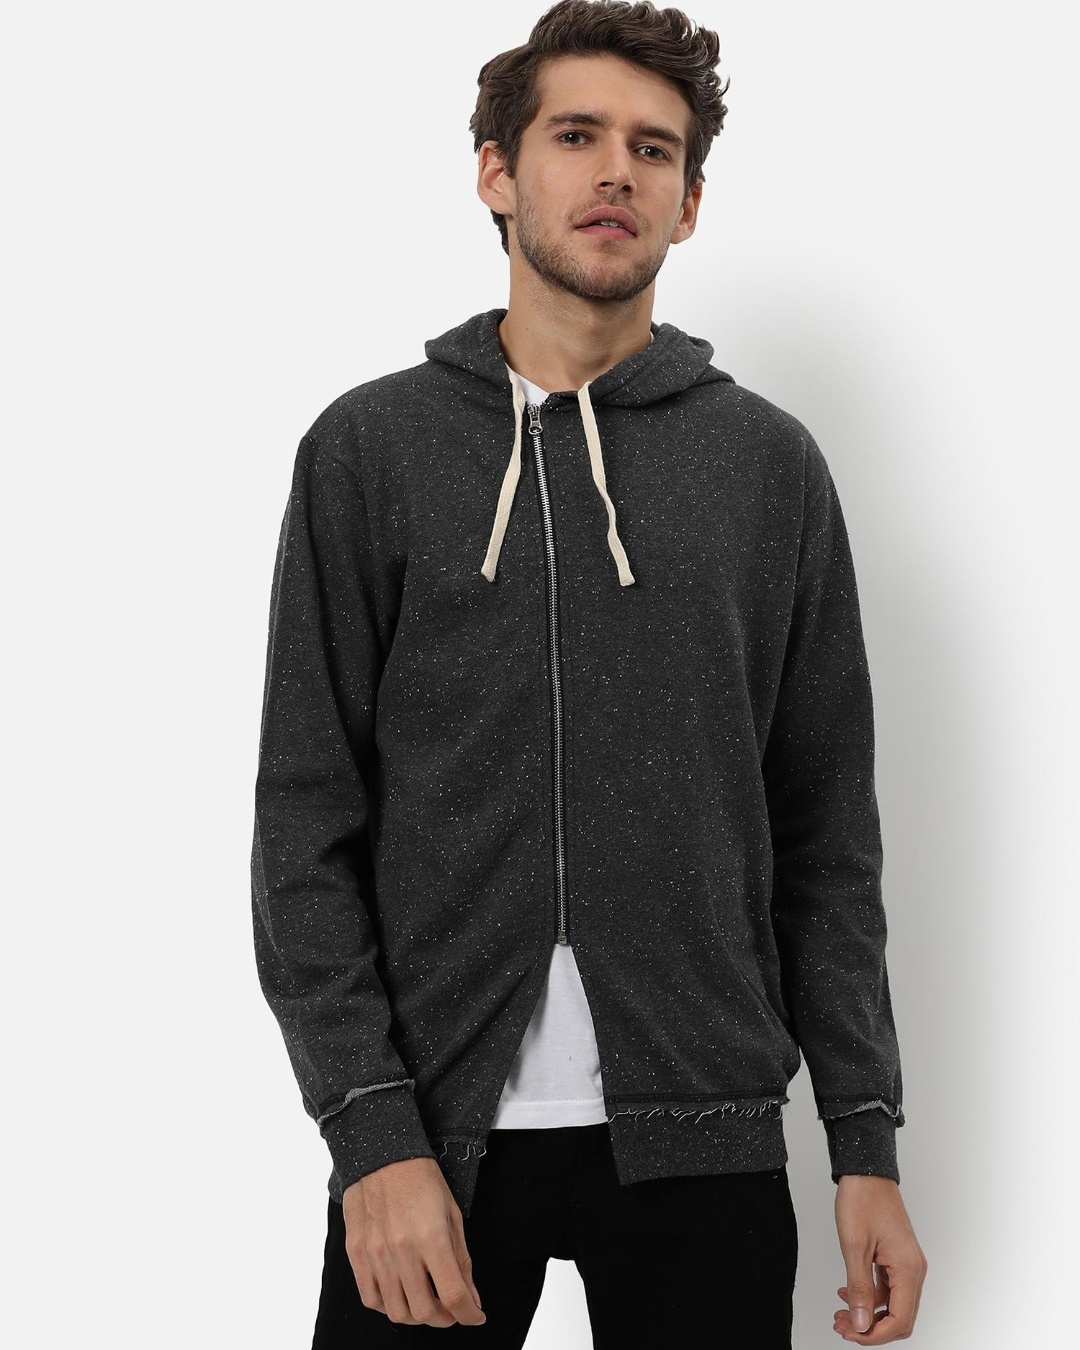 Buy Men's Grey Hooded Jacket Online at Bewakoof